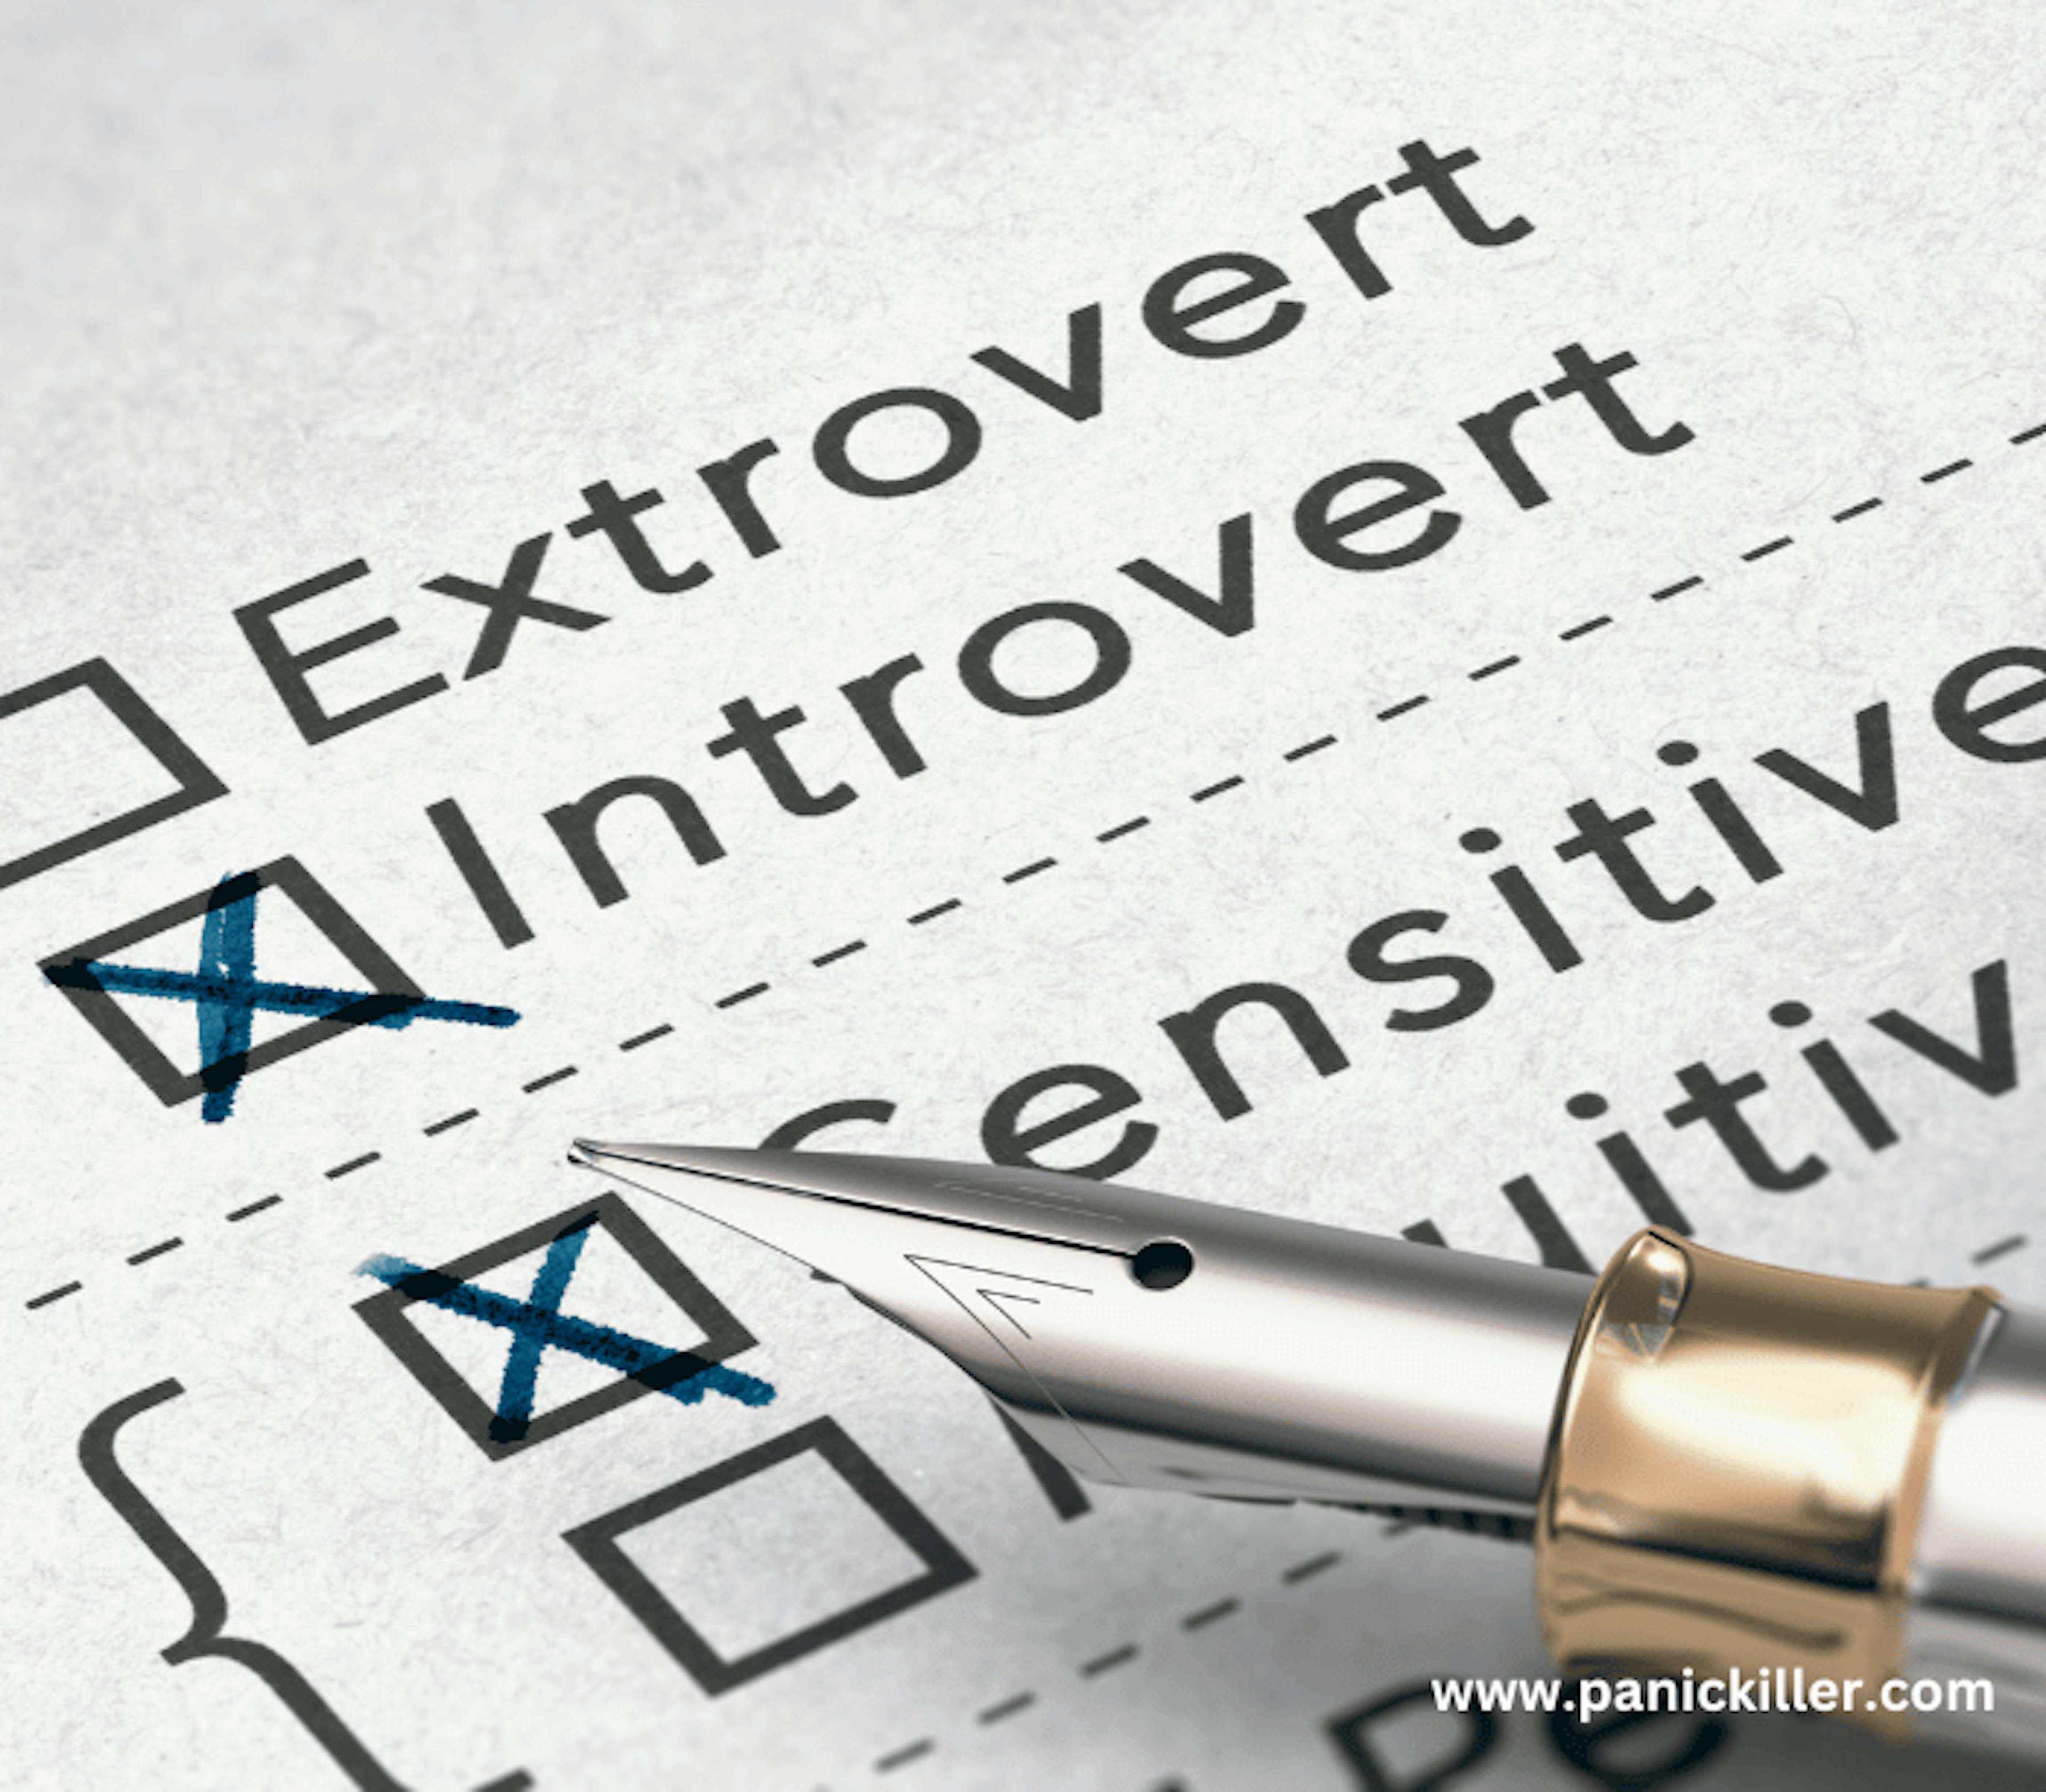 Extrovert vs introvert